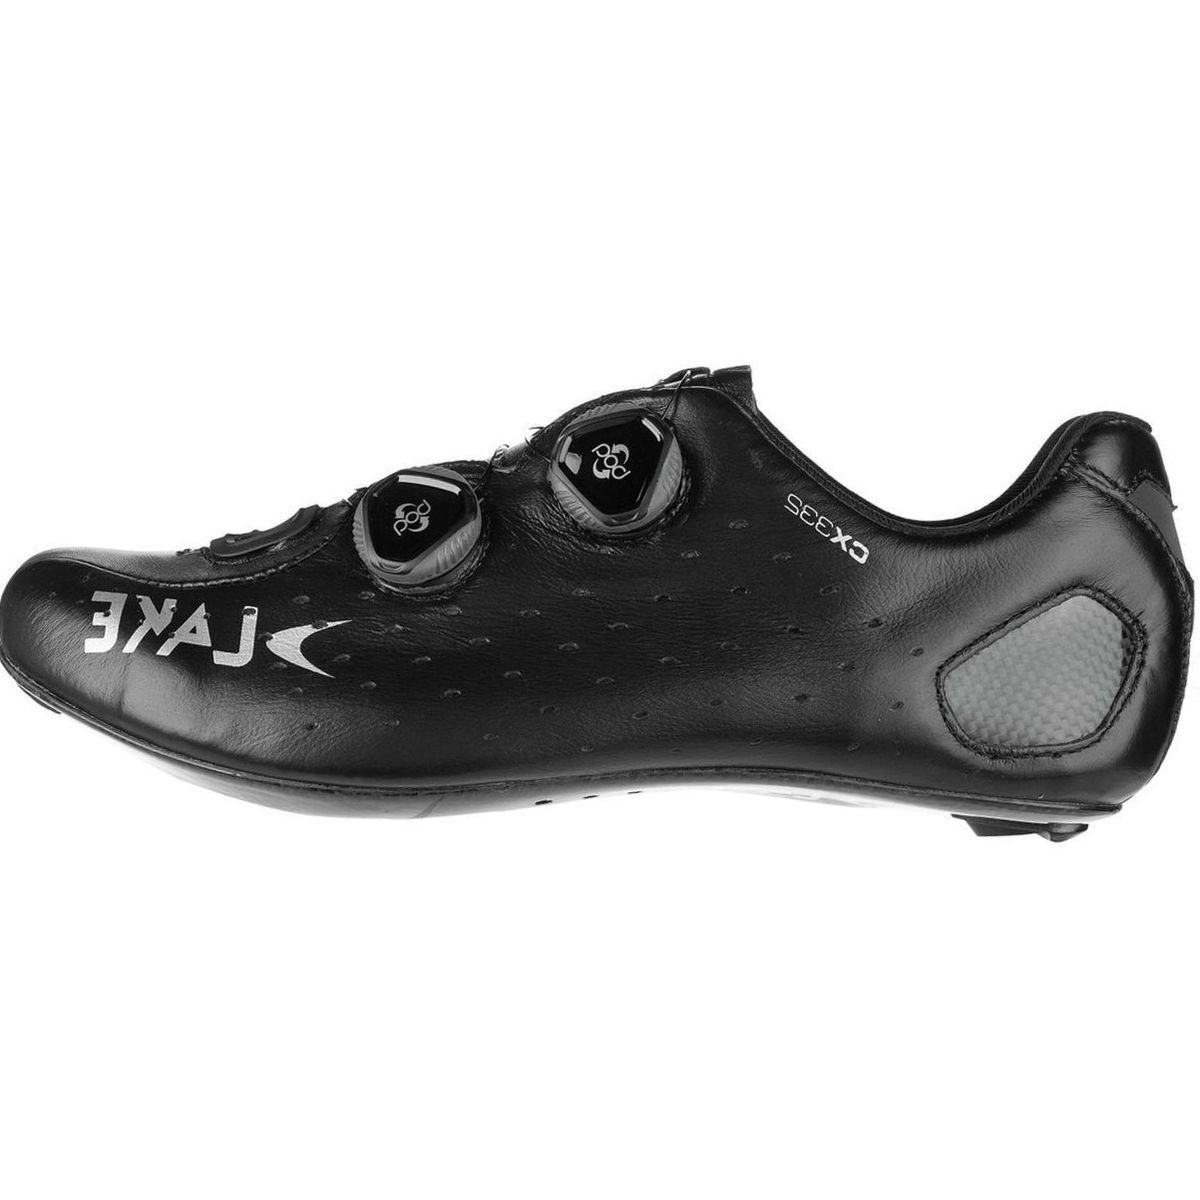 Lake CX332 L6 Boa Cycling Shoe - Men's